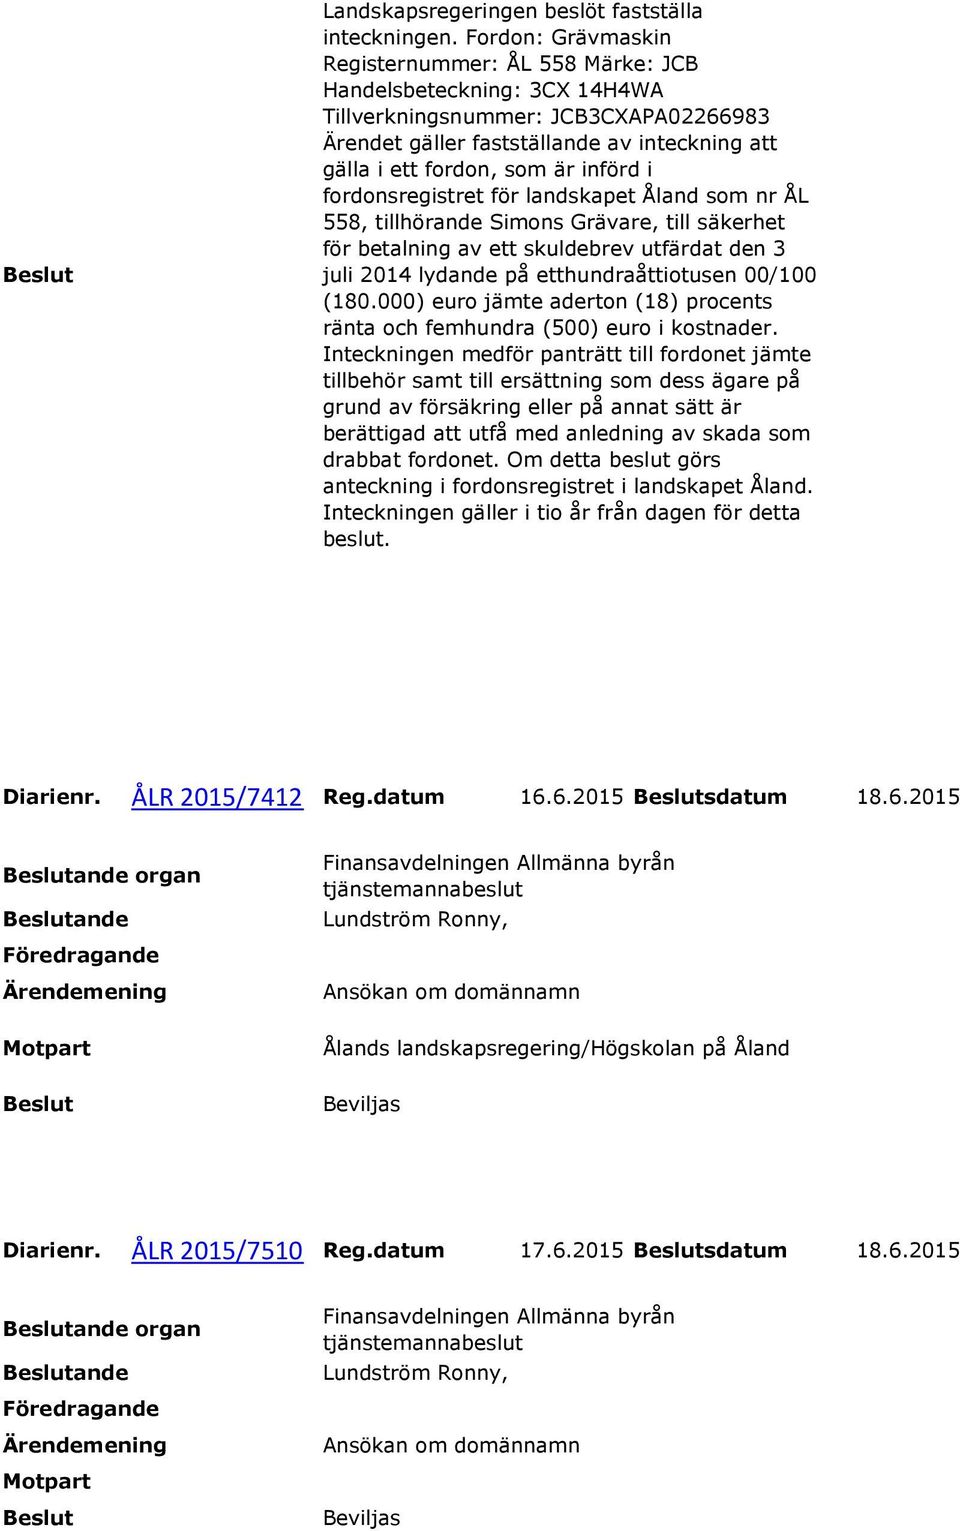 införd i fordonsregistret för landskapet Åland som nr ÅL 558, tillhörande Simons Grävare, till säkerhet för betalning av ett skuldebrev utfärdat den 3 juli 2014 lydande på etthundraåttiotusen 00/100